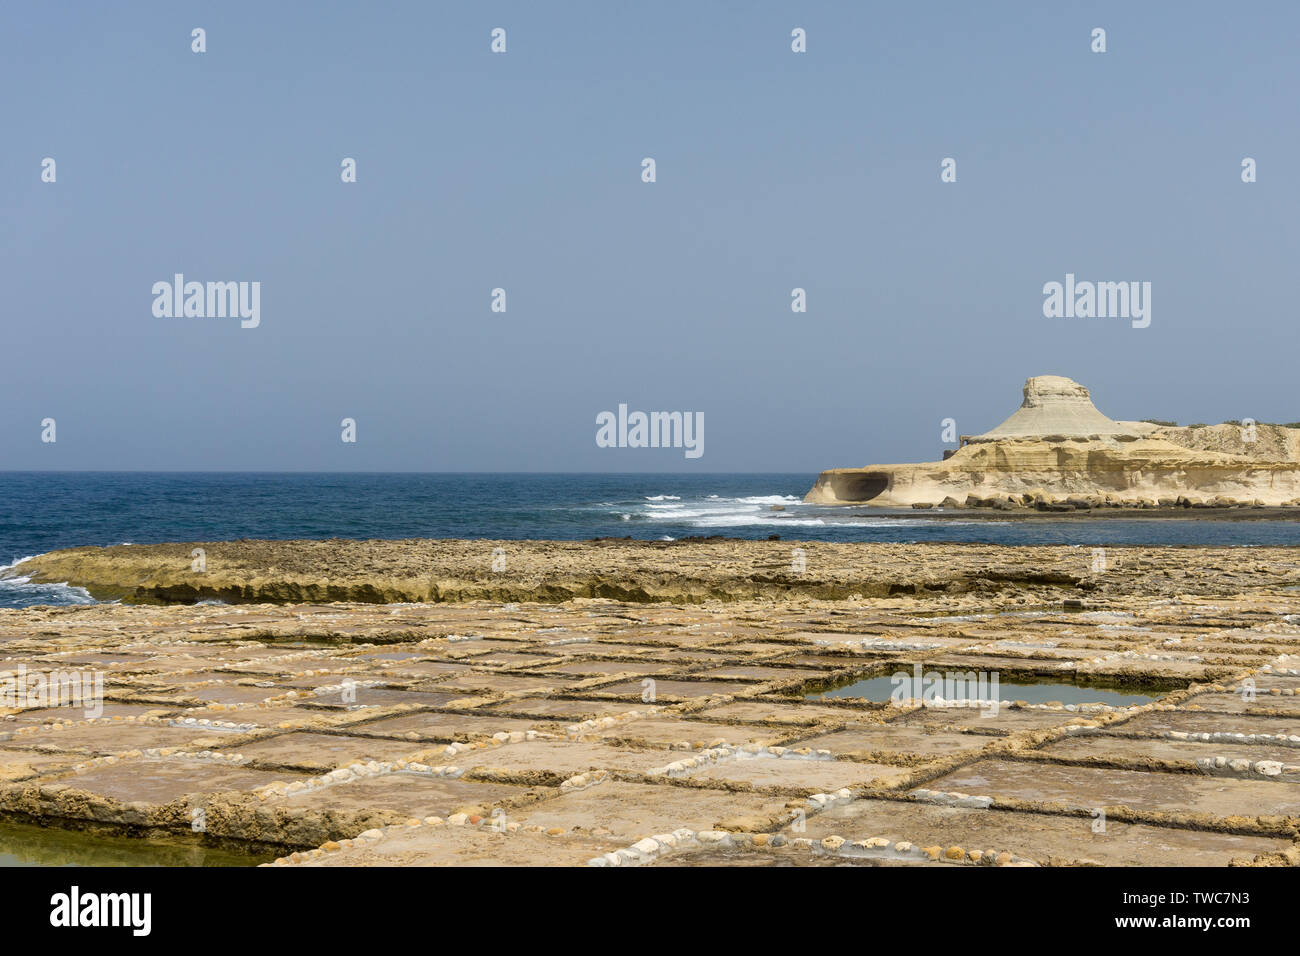 Les marais salants de l'île de Gozo, Malte Banque D'Images